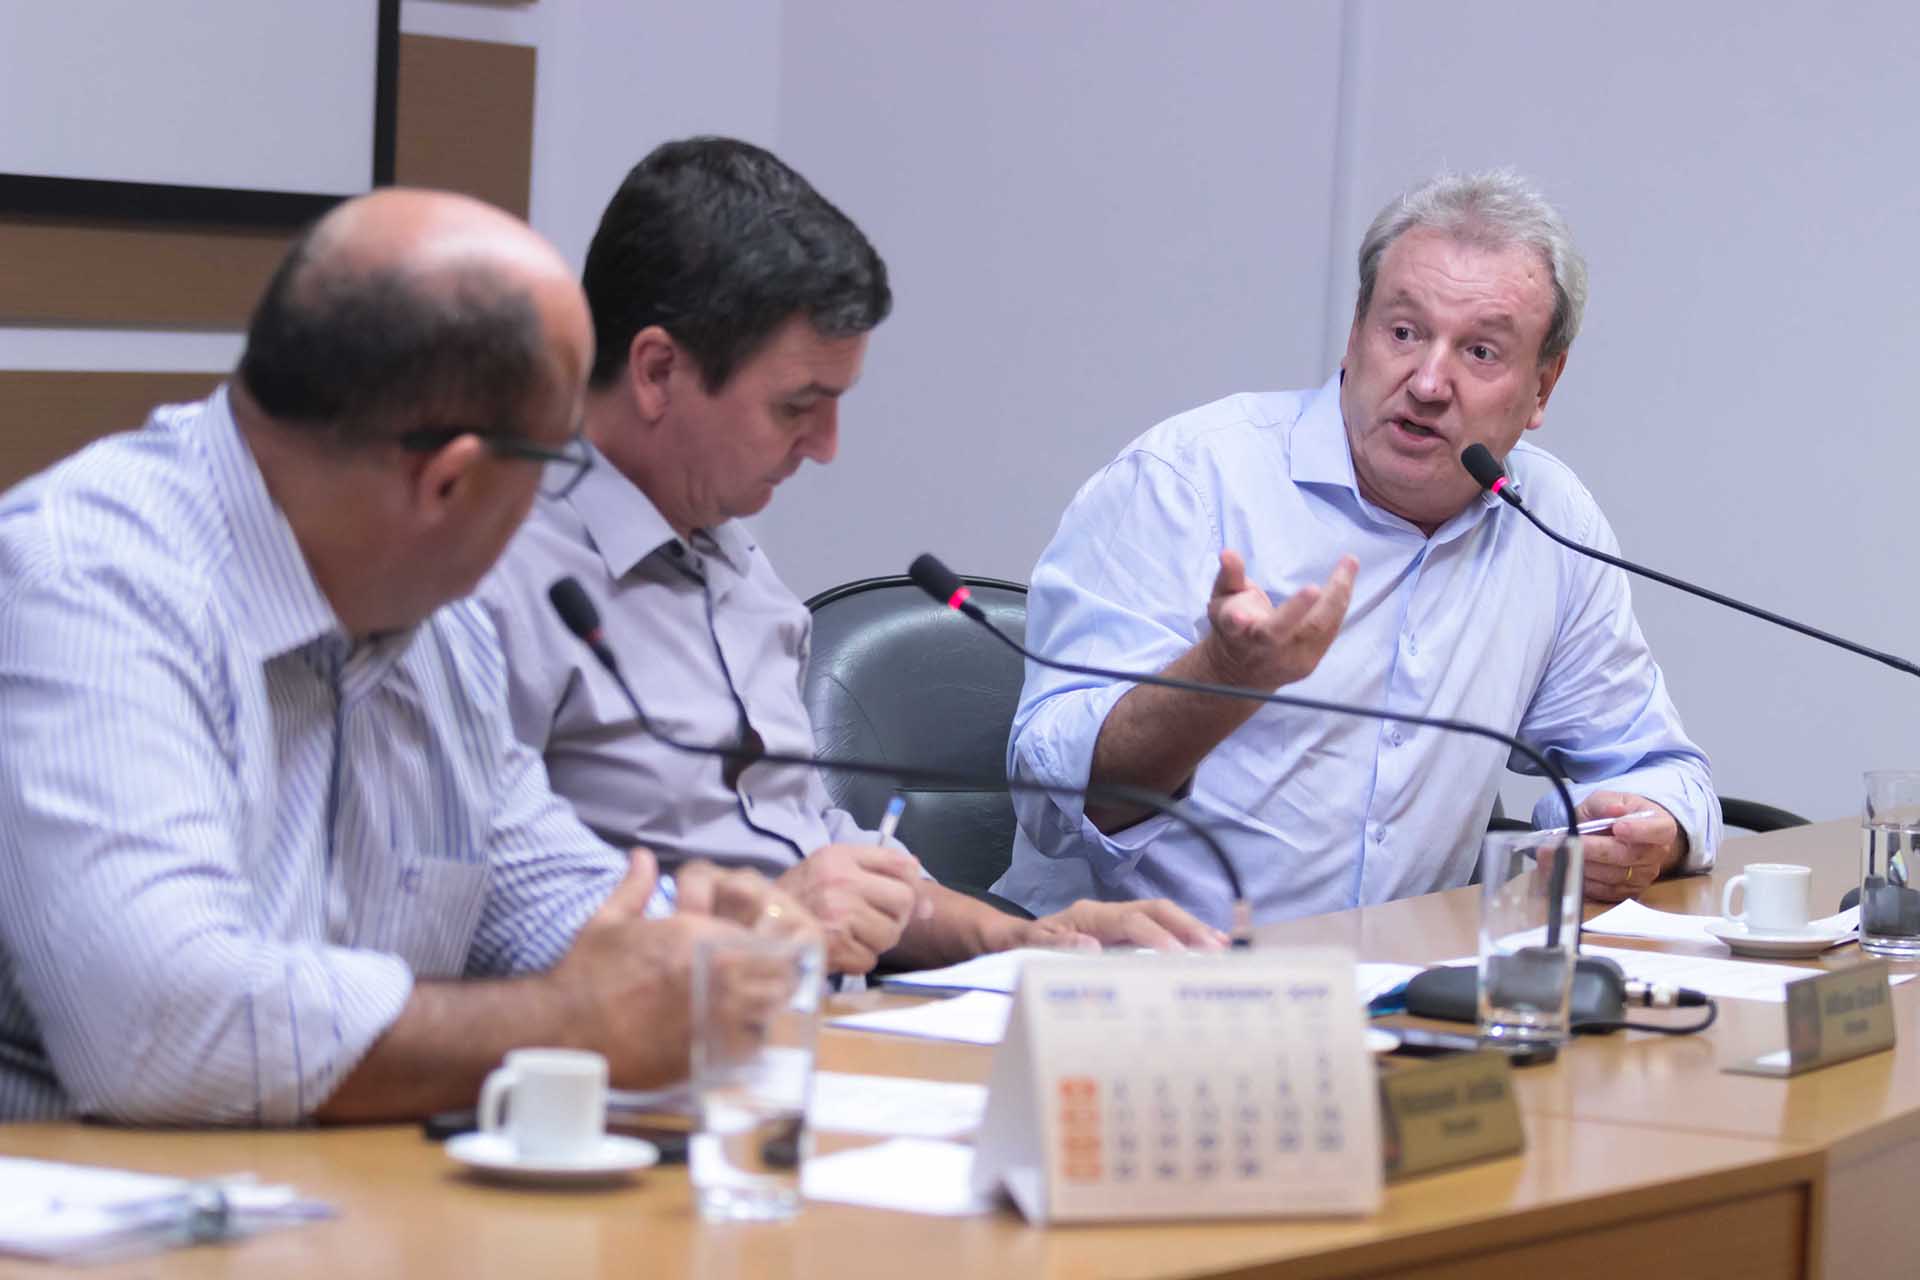 Comissão de Economia aprovou uma das propostas nesta segunda-feira (25) | Foto Mauro Arthur Schlieck/Câmara de Vereadores de Joinville
